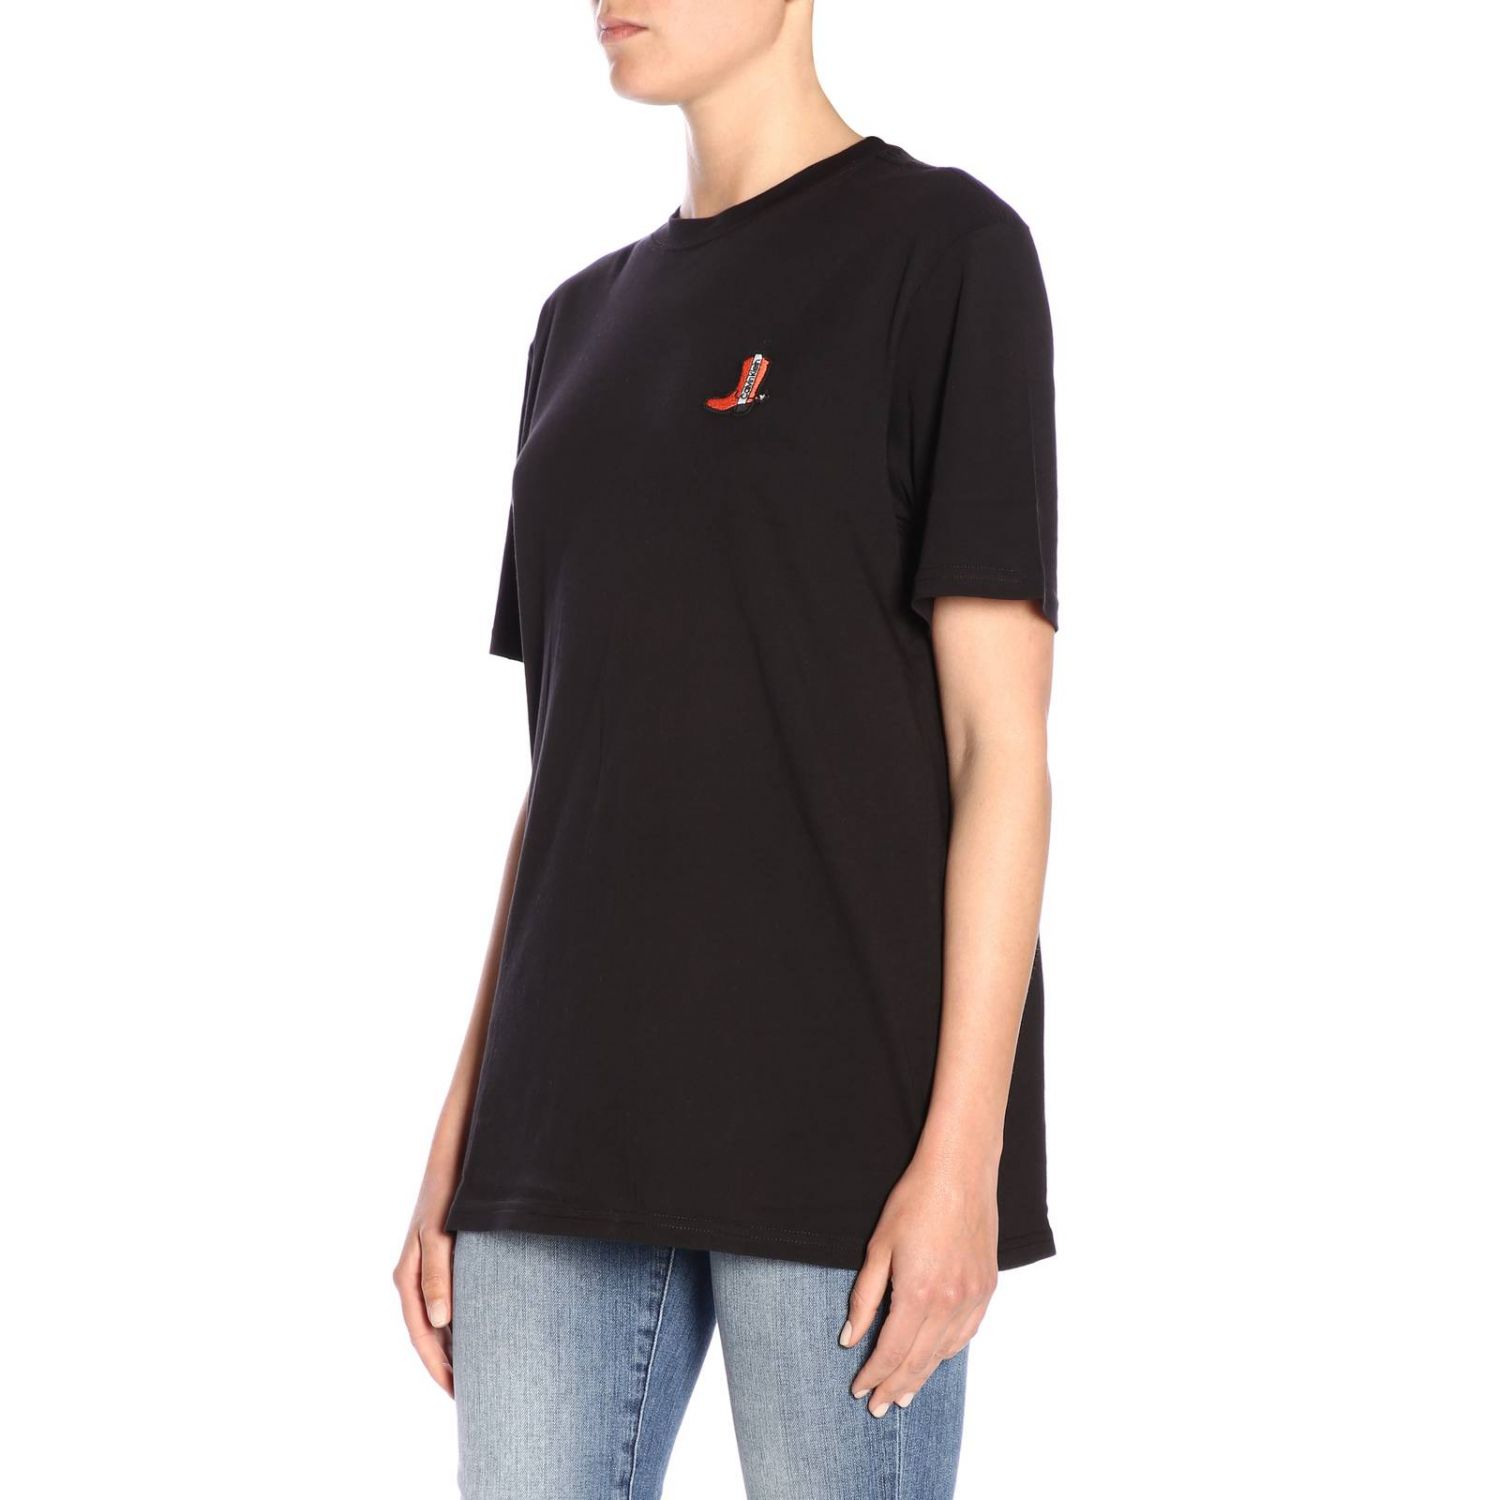 Calvin Klein Outlet: T-shirt women | T-Shirt Calvin Klein Women Black ...